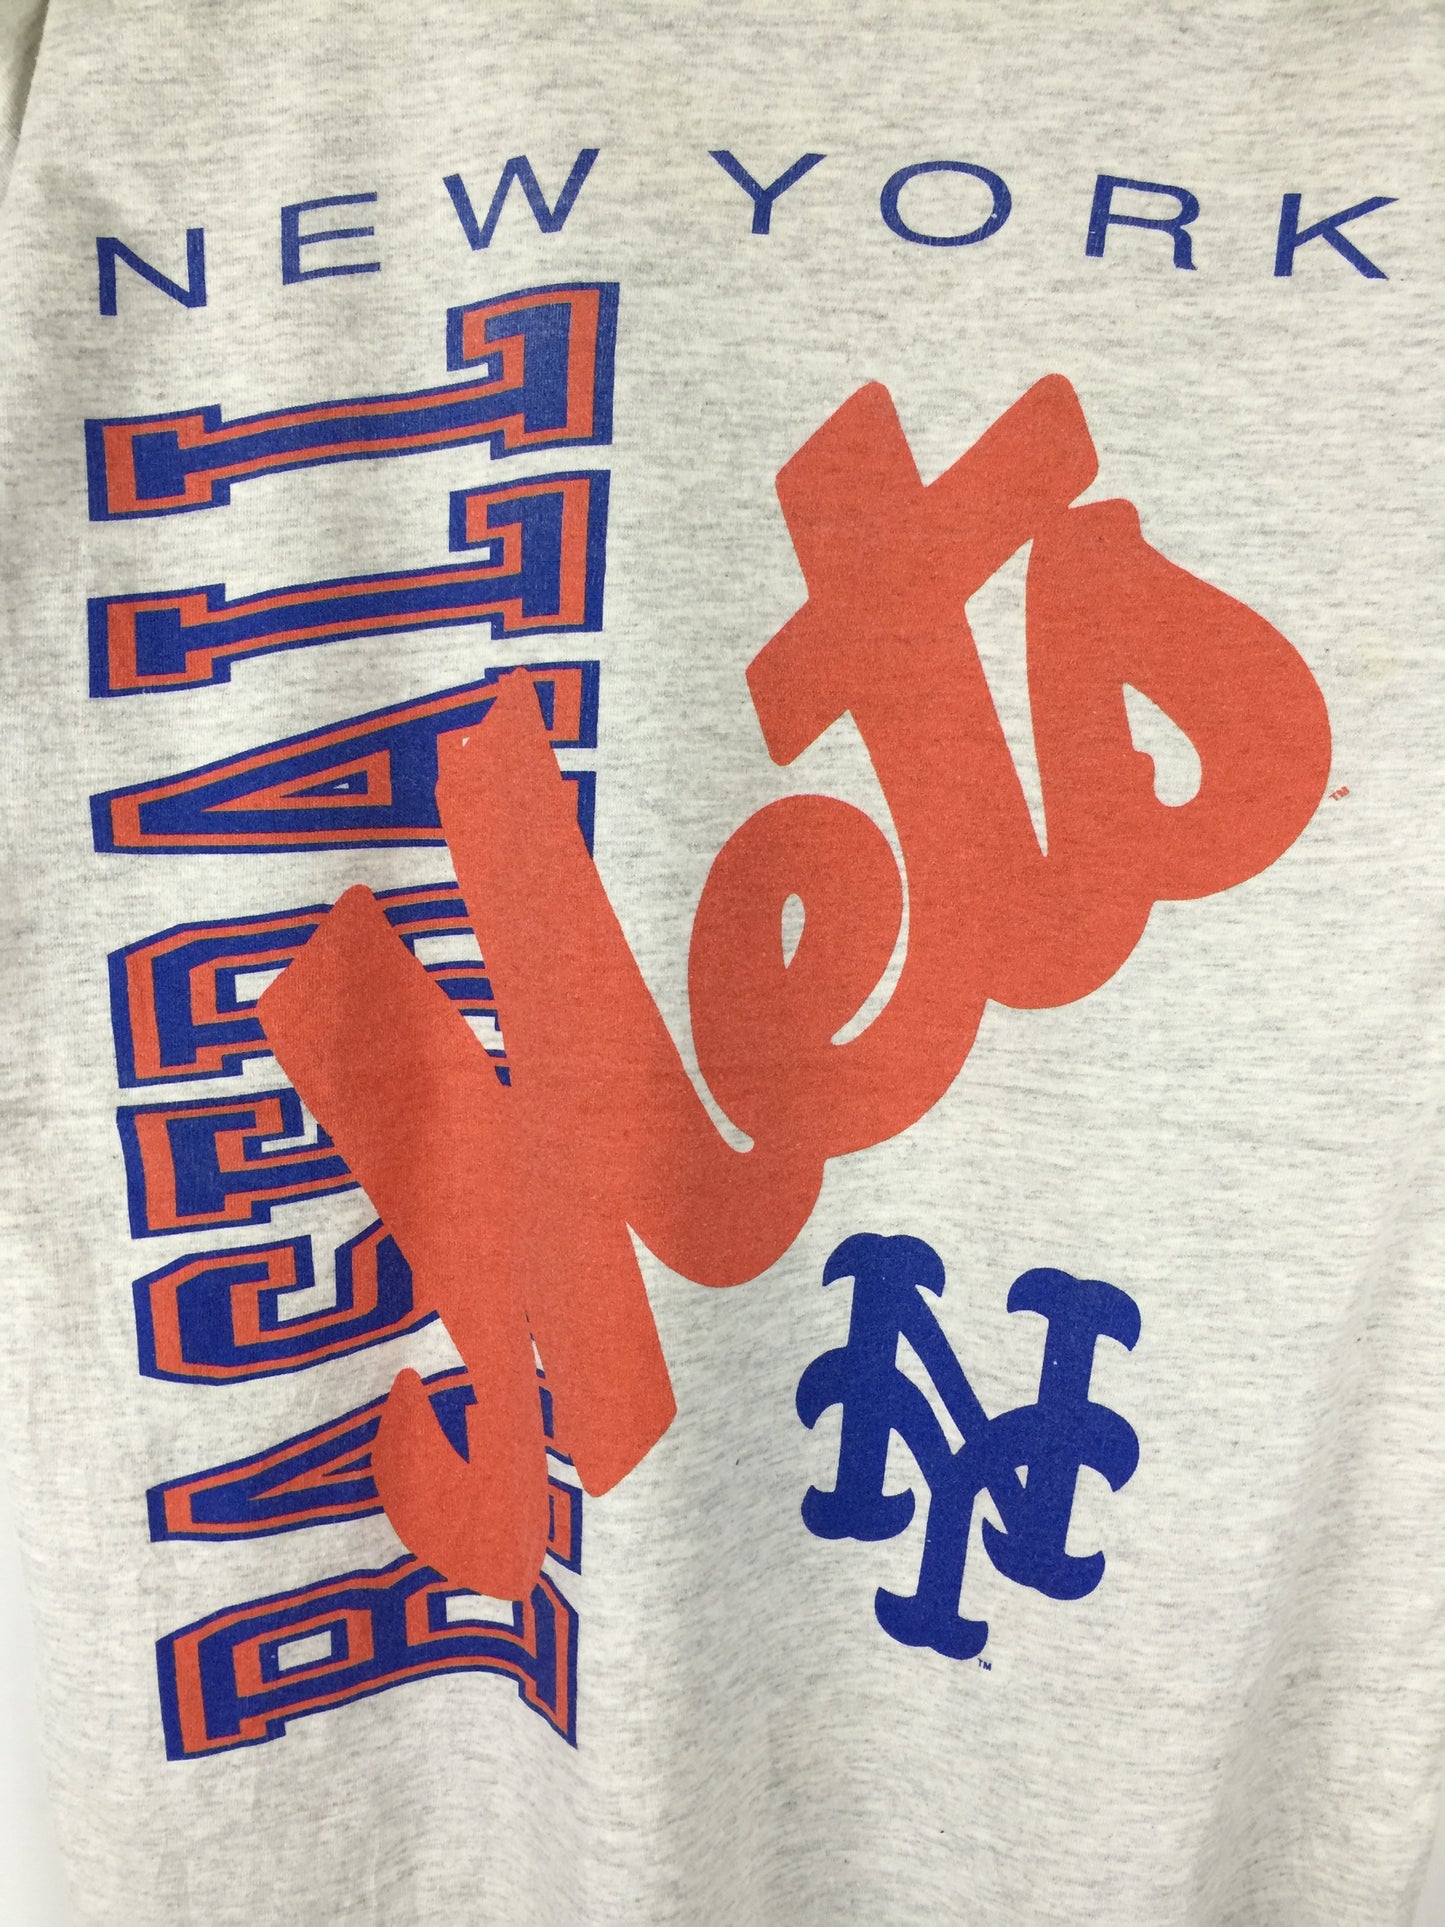 Vintage New York Mets 90's MLB team Full print T-shirt